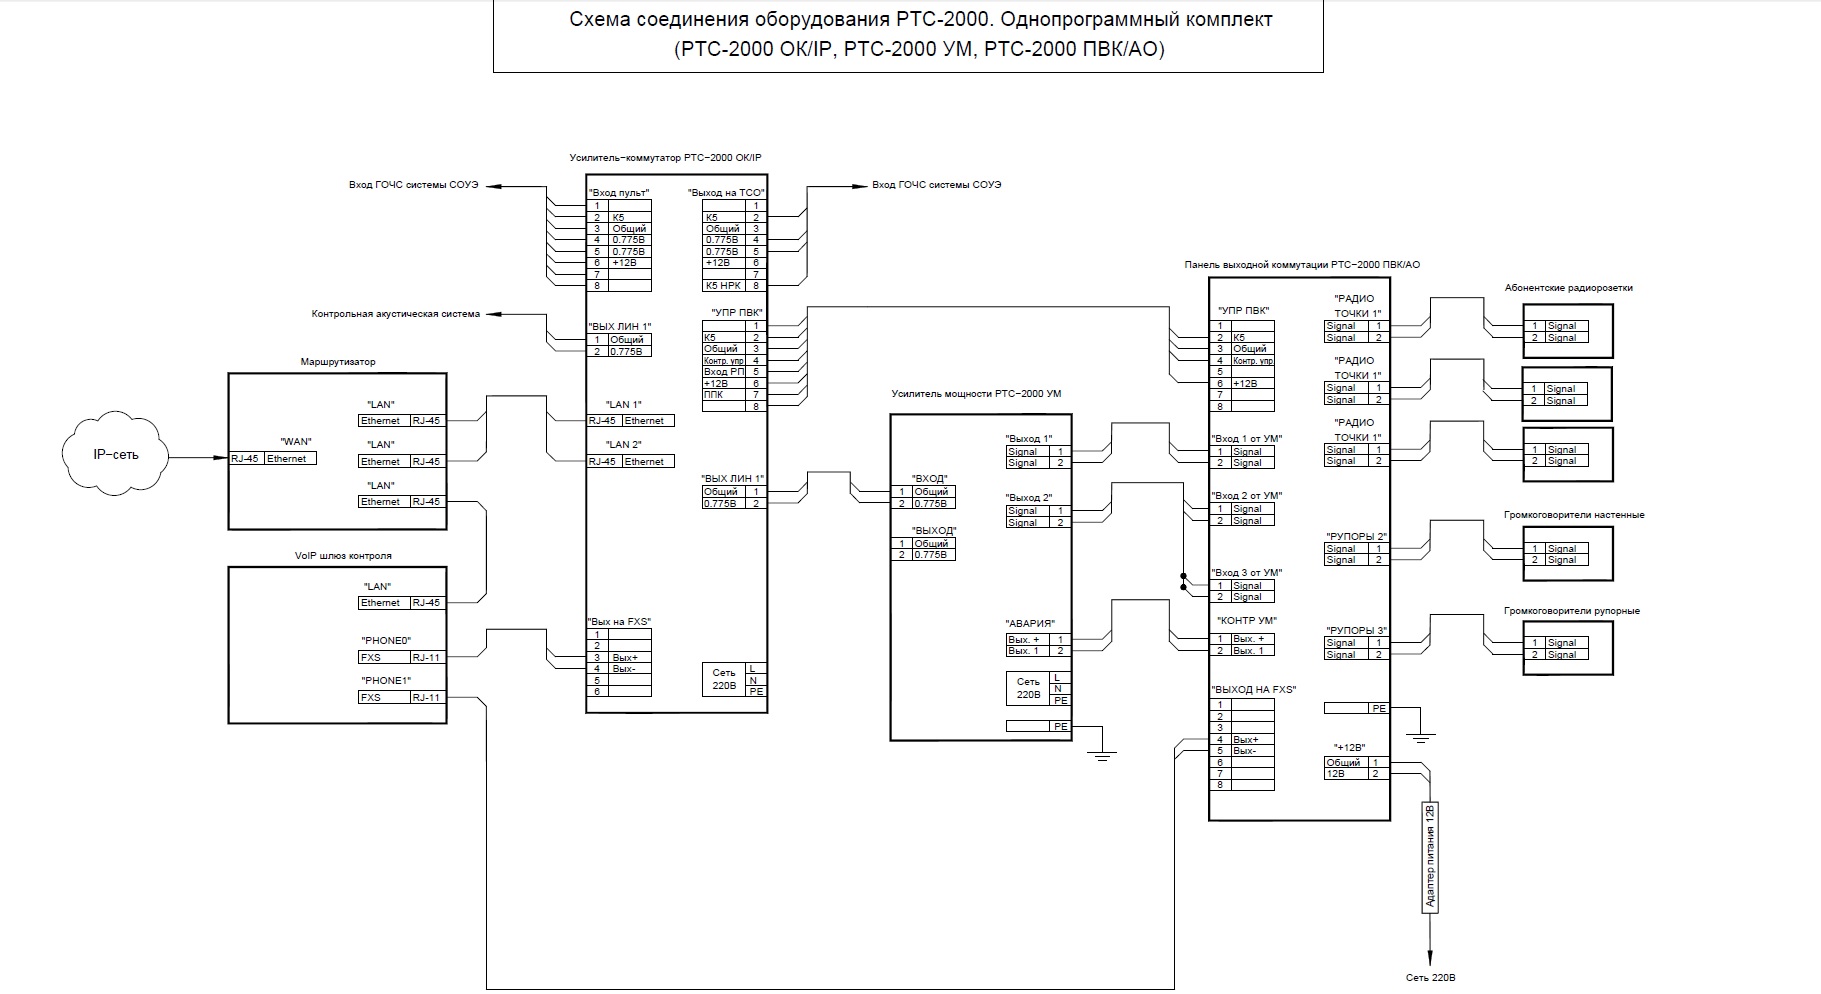 Схемы соединения оборудования РТС-2000 Однопрограммный комплект.